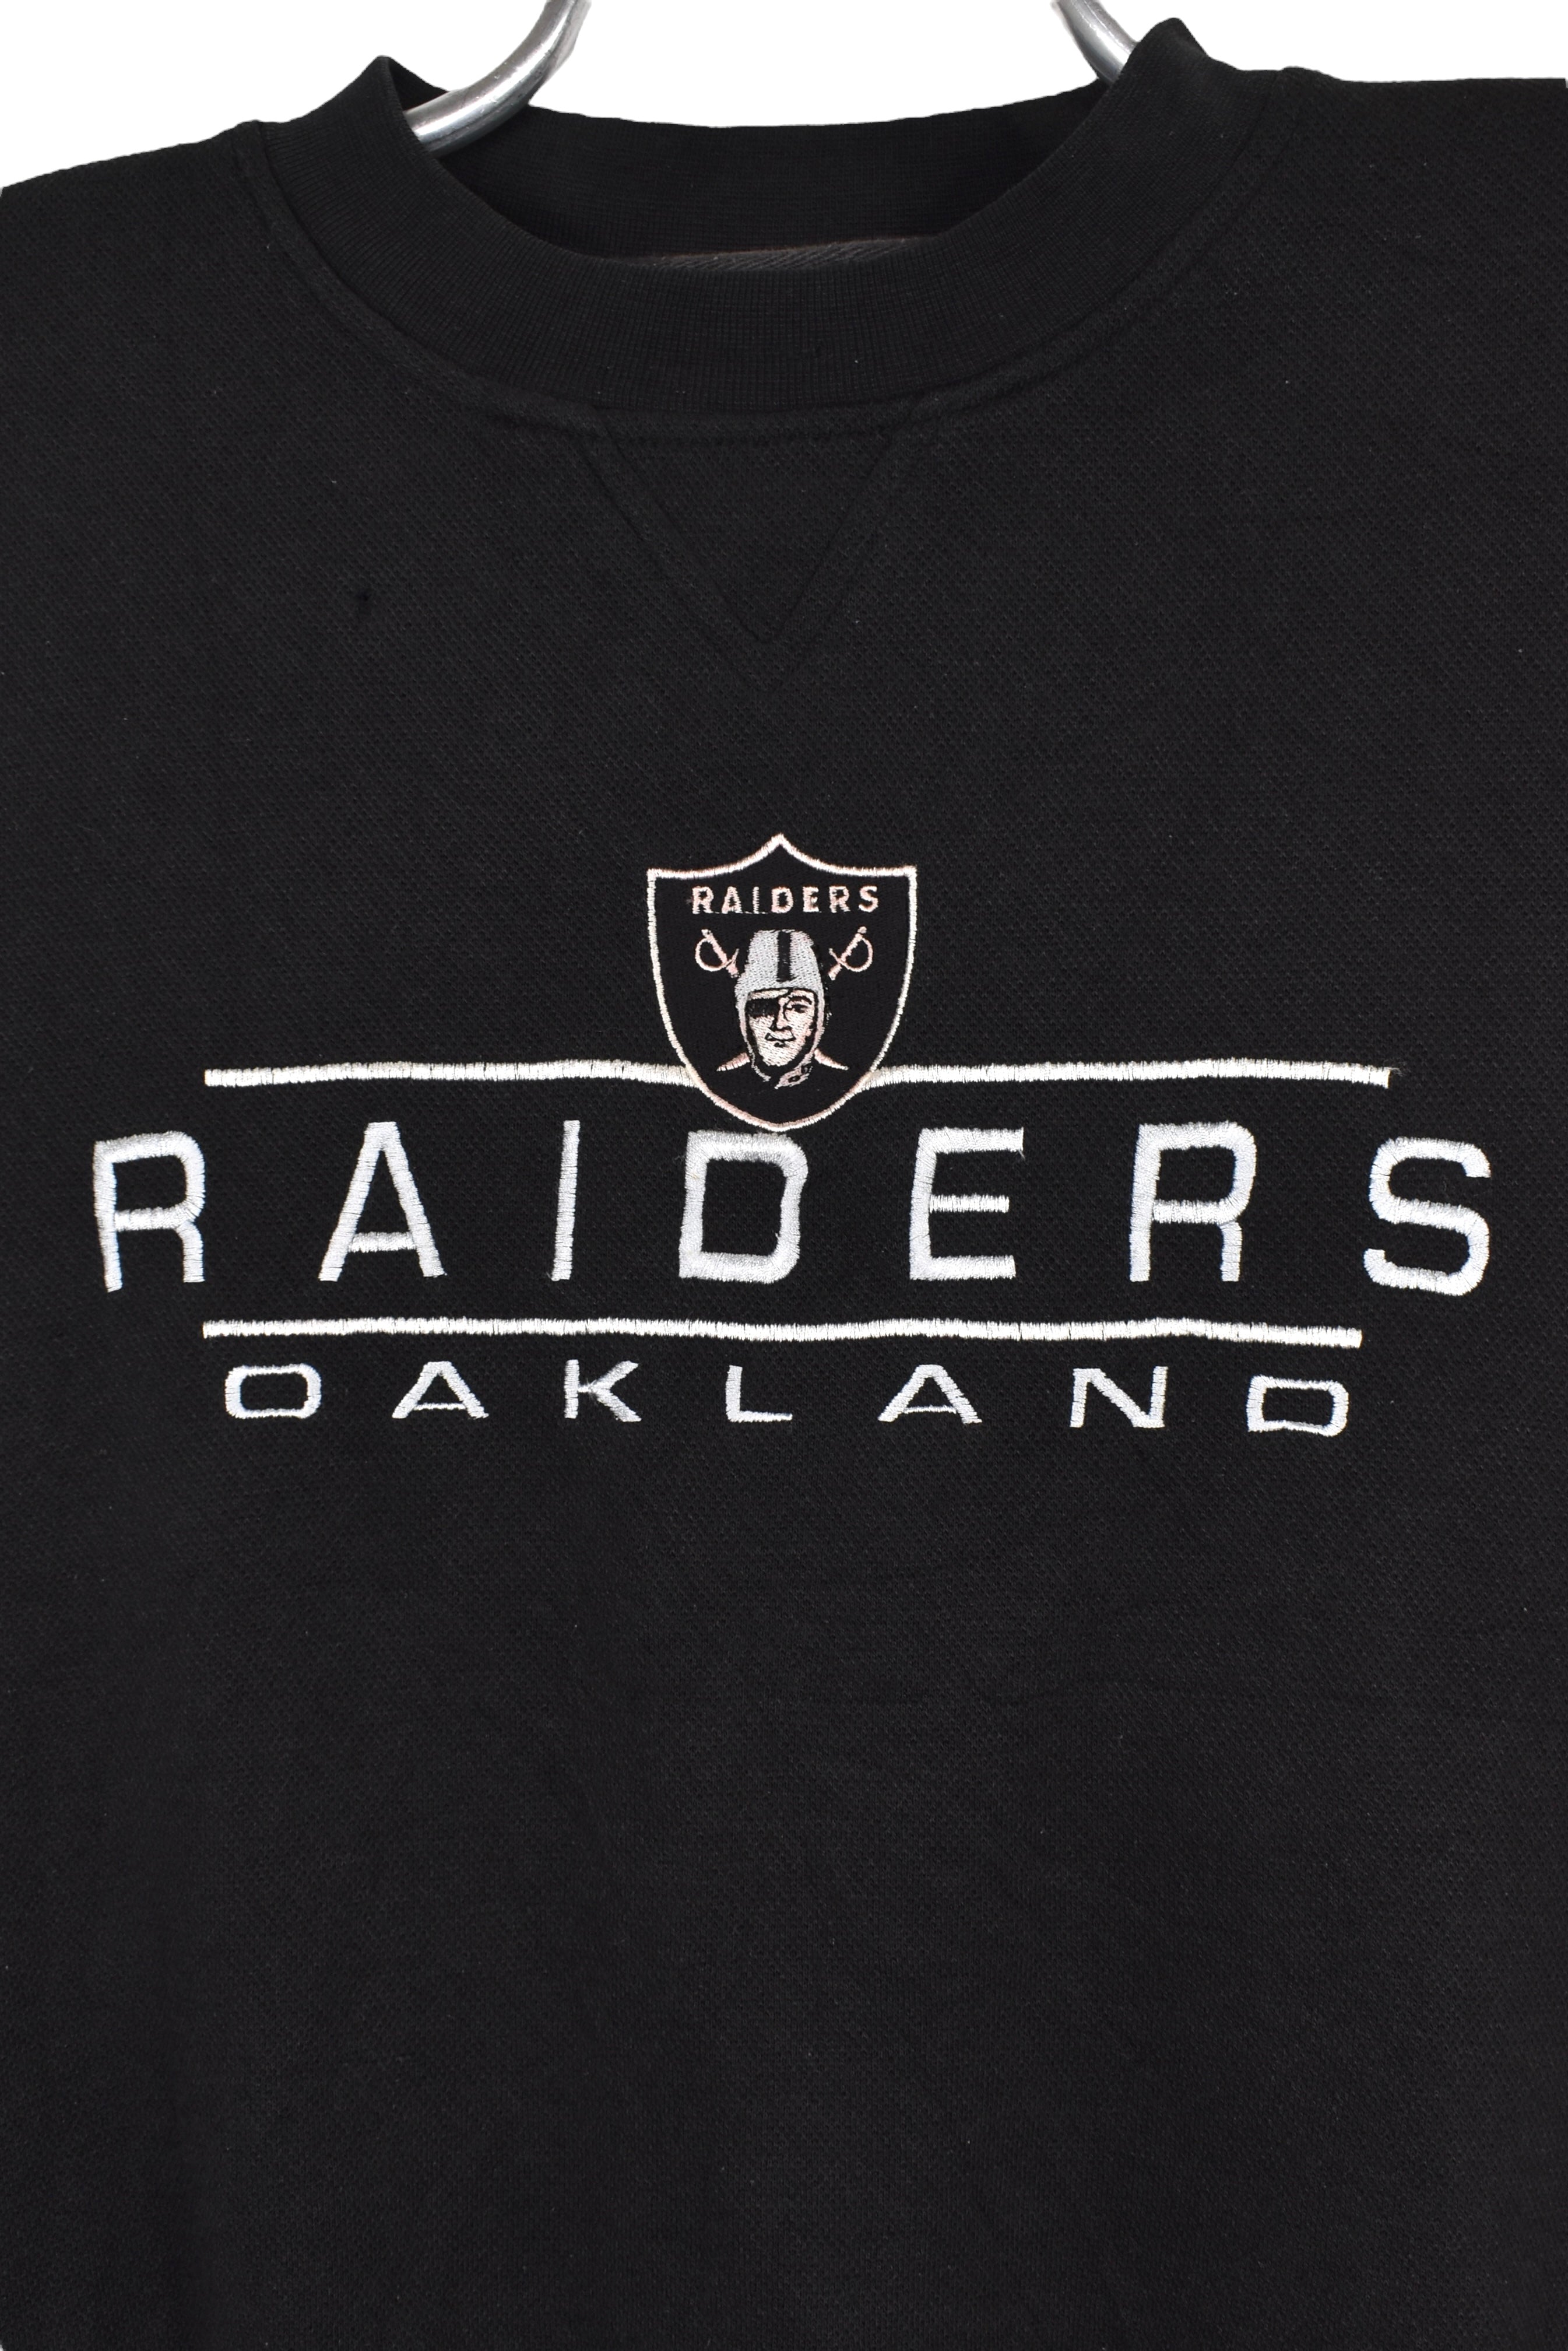 Vintage Oakland Raiders sweatshirt (M), black NFL embroidered crewneck